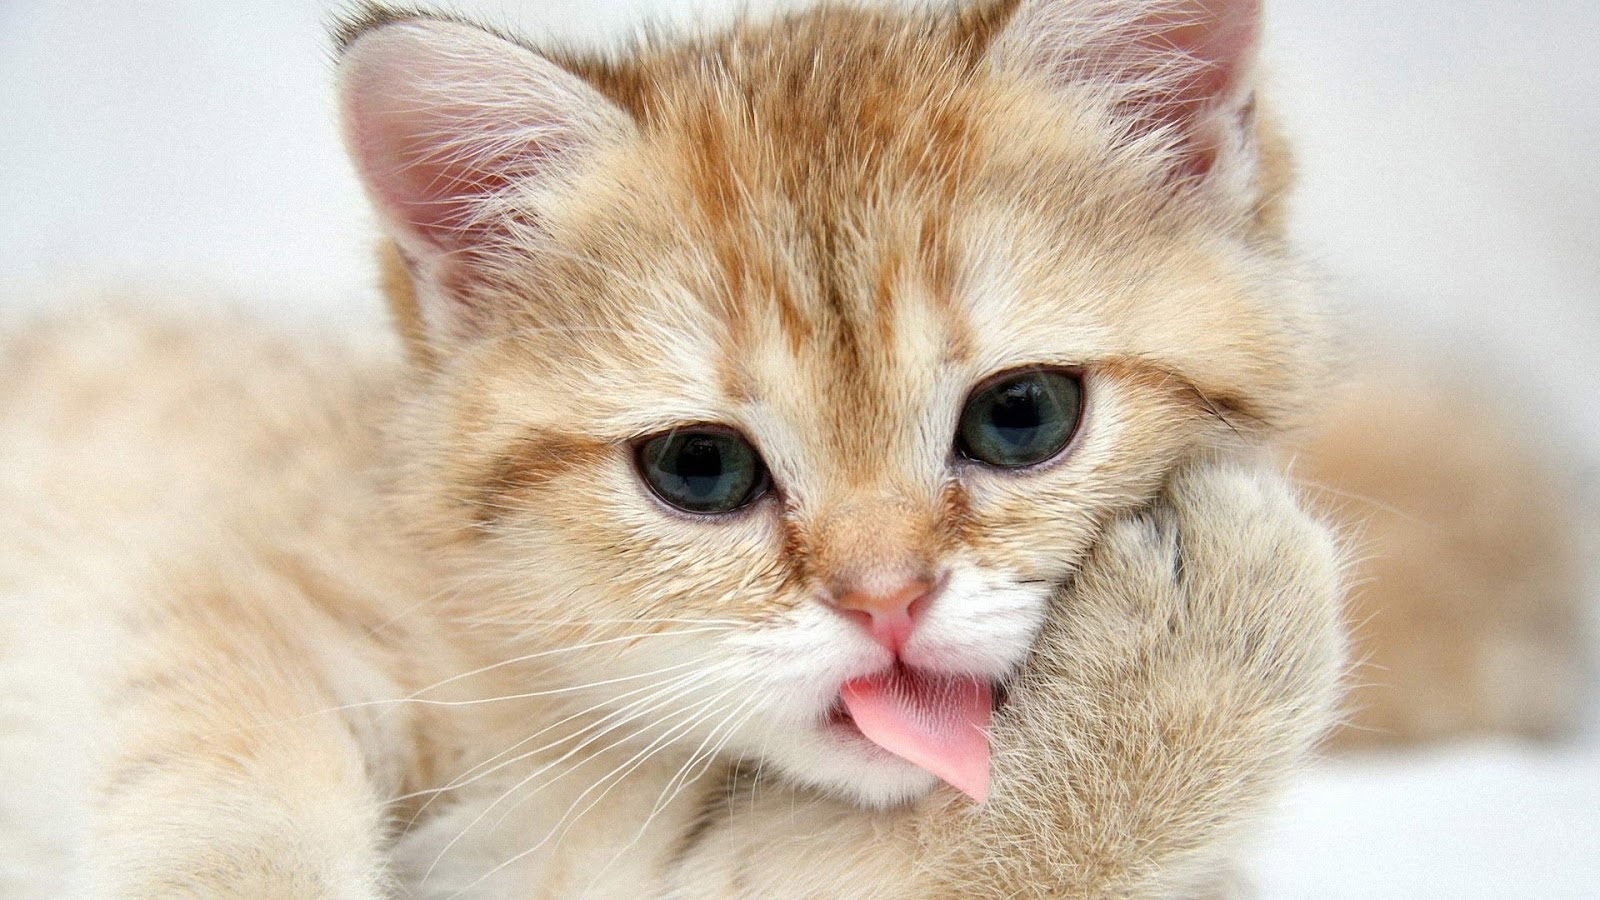 Wallpaper Kucing Lucu Dan Imut 2016 Mudahnya Belajar Komputer Bagi